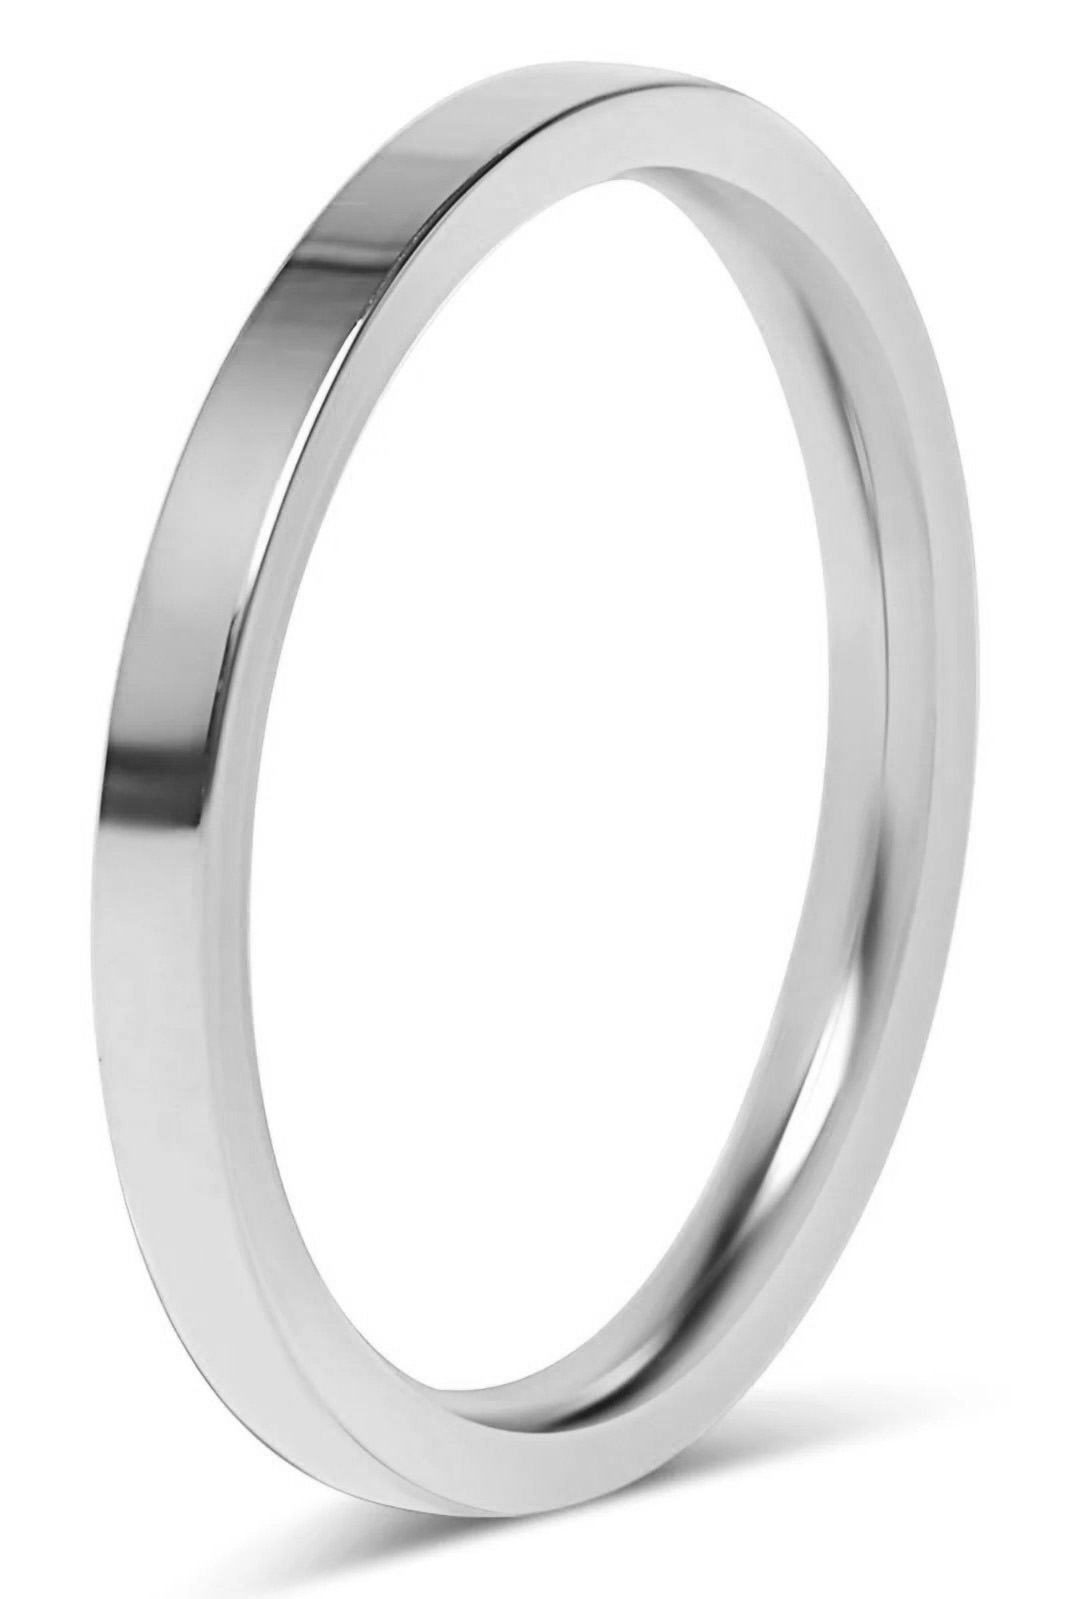 3mm Düz Parlak Model Erkek Kadın Çelik Alyans Söz Nişan Yüzüğü cl42 - Beyaz